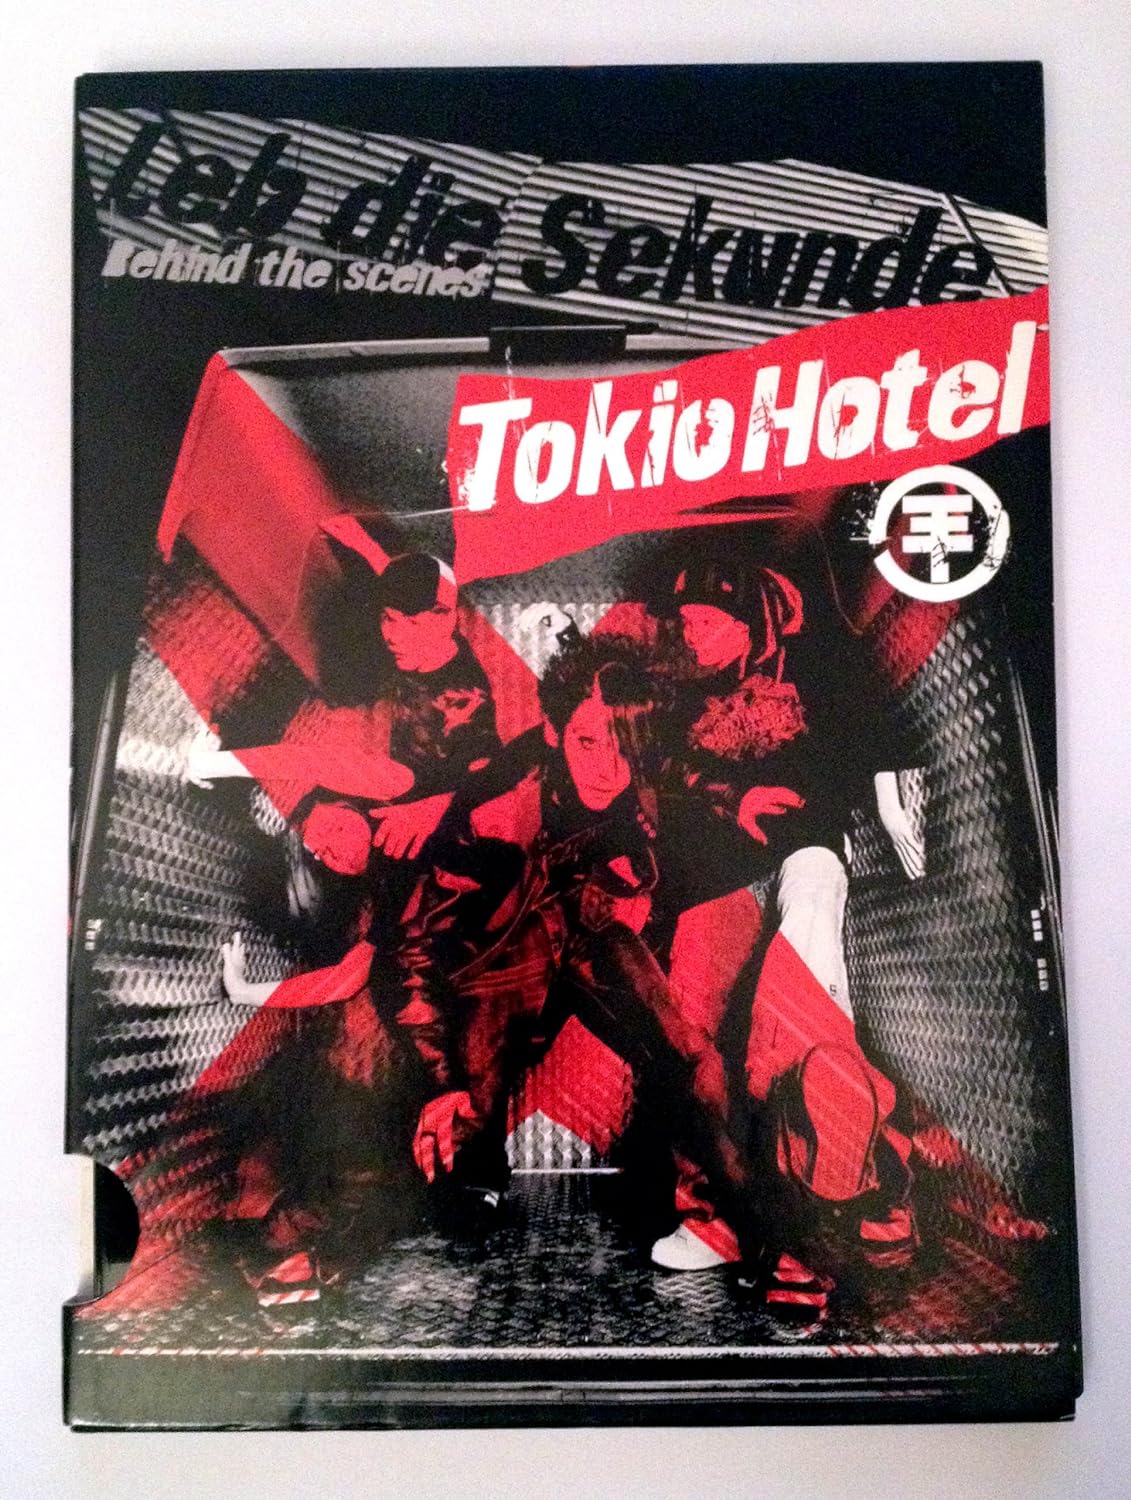 Tokio Hotel - Leb Die Sekunde, Behind The Scenes (DVD)